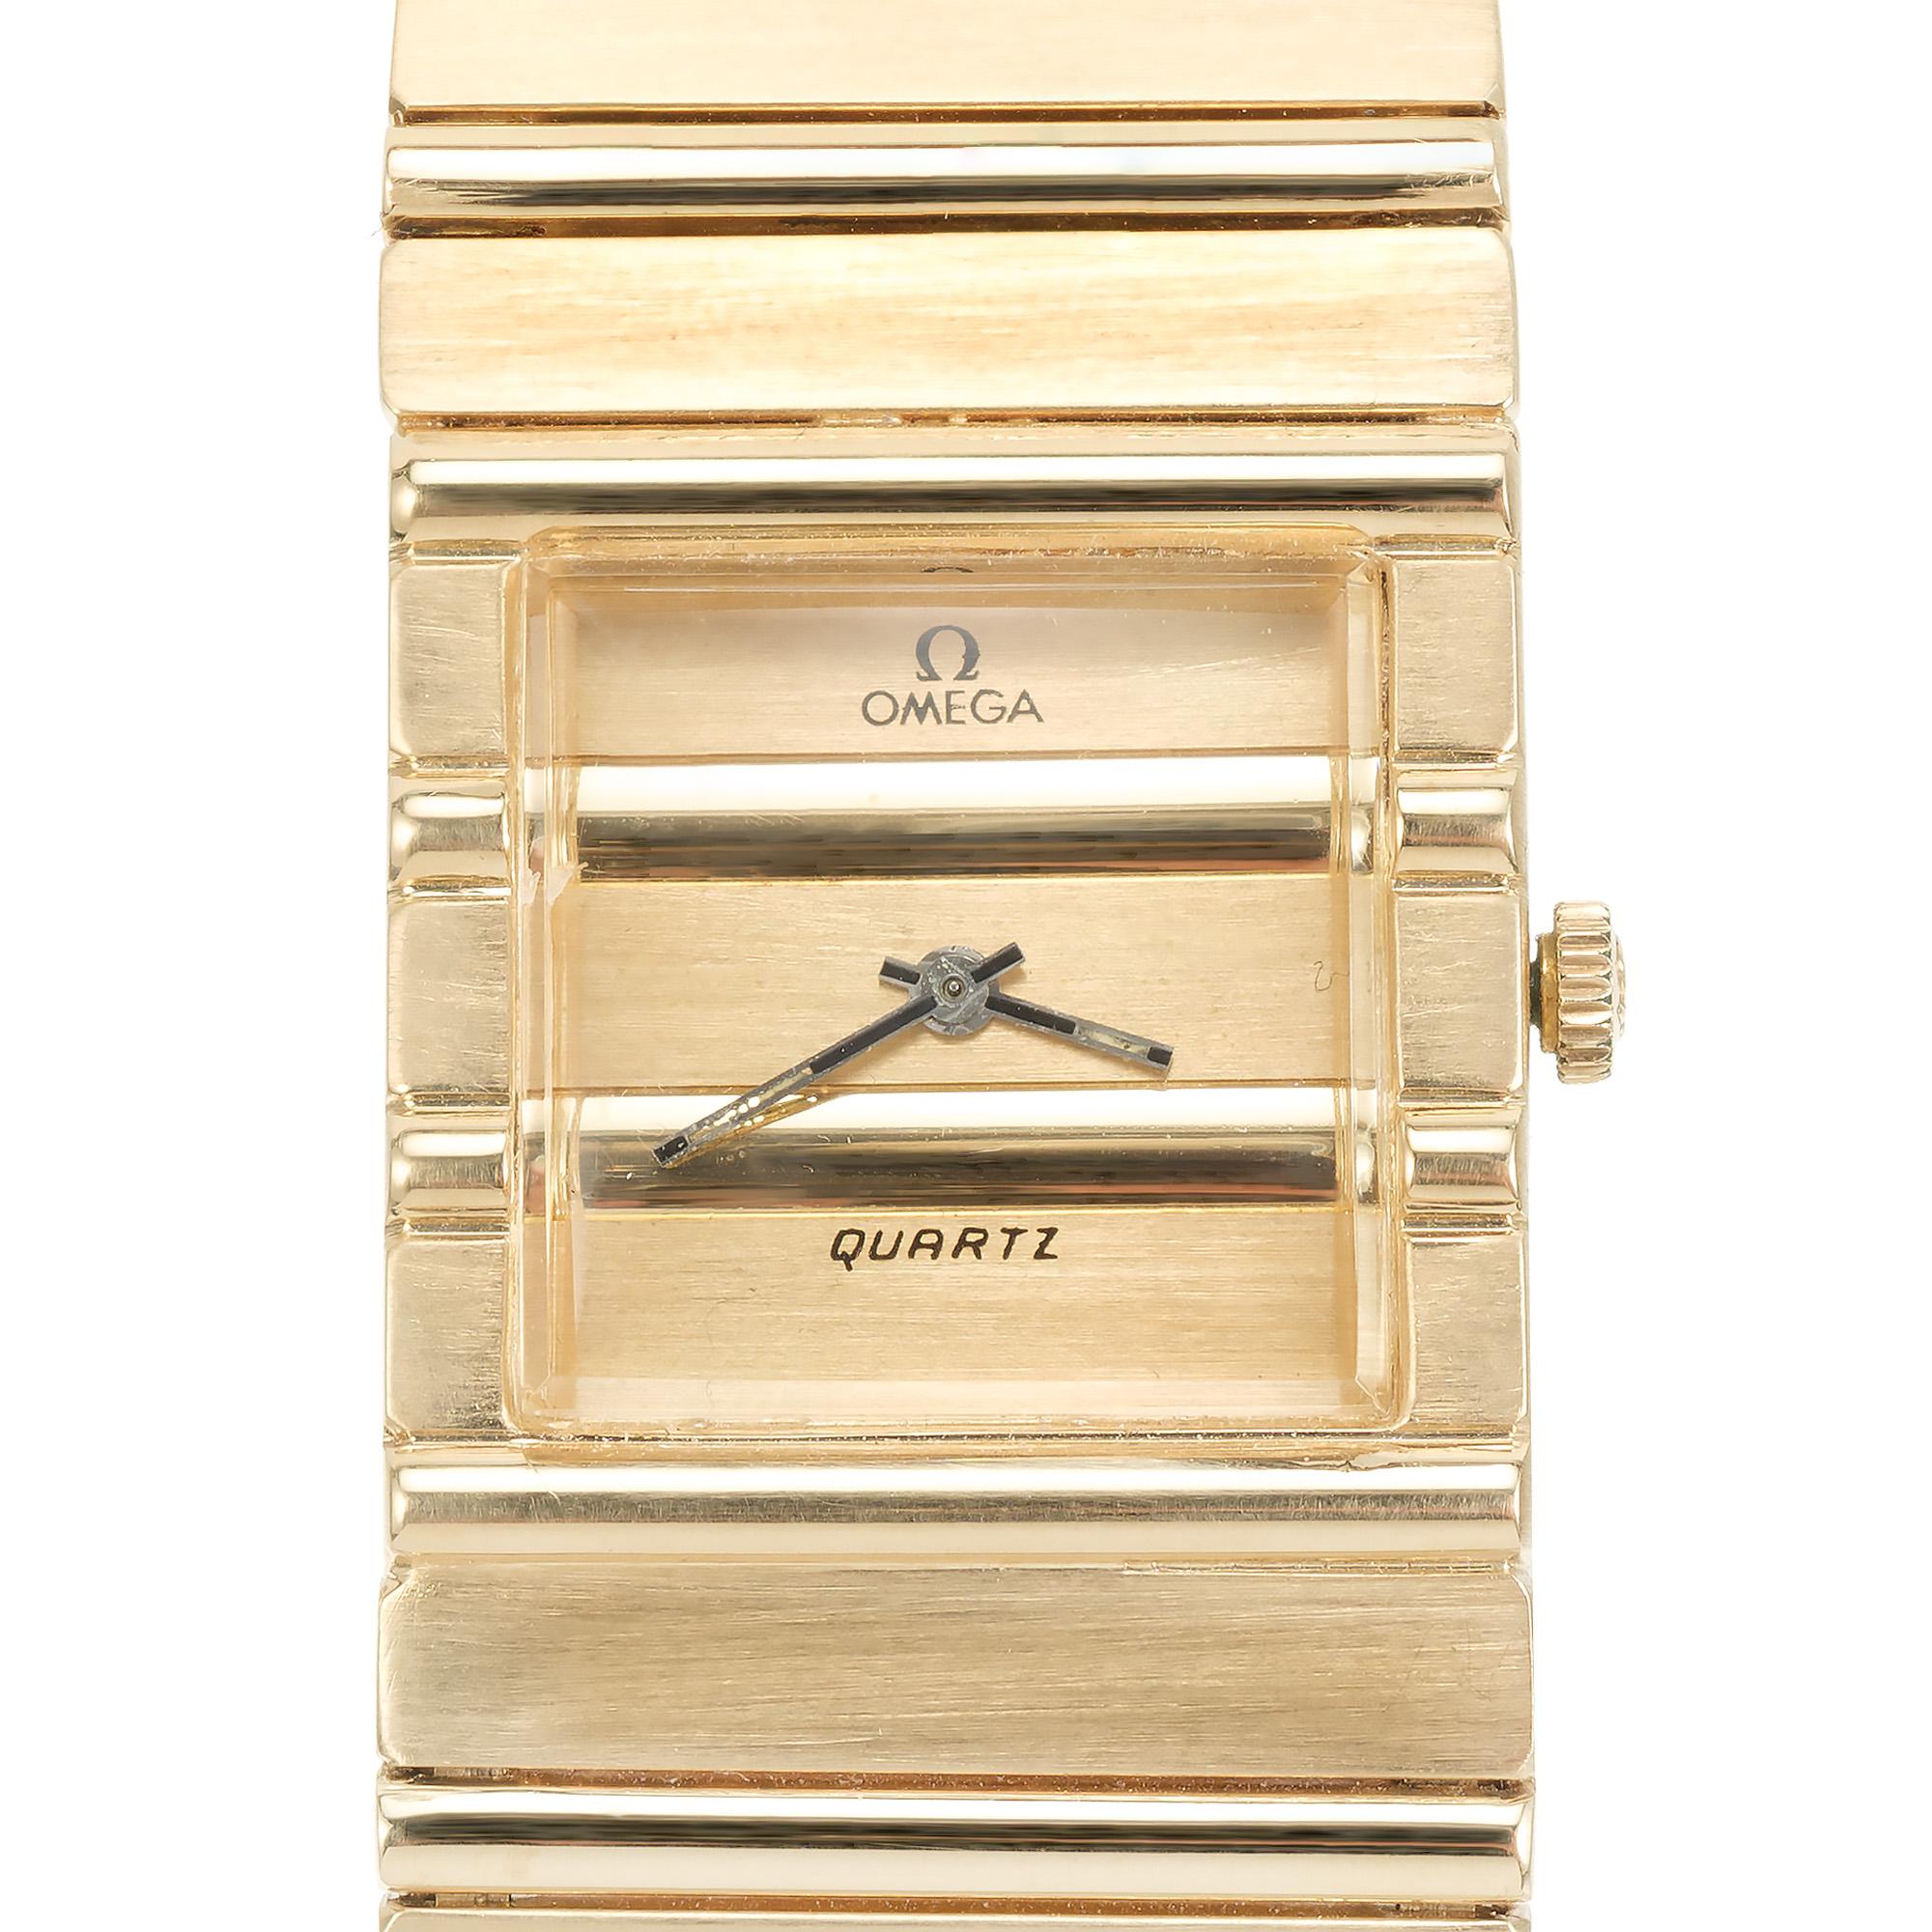 Montre-bracelet Omega King Midas en or jaune 18 carats de 8 pouces. Vers 1960-1970, Omega a produit cette montre pour hommes afin de répondre à la populaire Rolex King Midas des années 1960. Les maillons brossés et polis alternent et le boîtier et